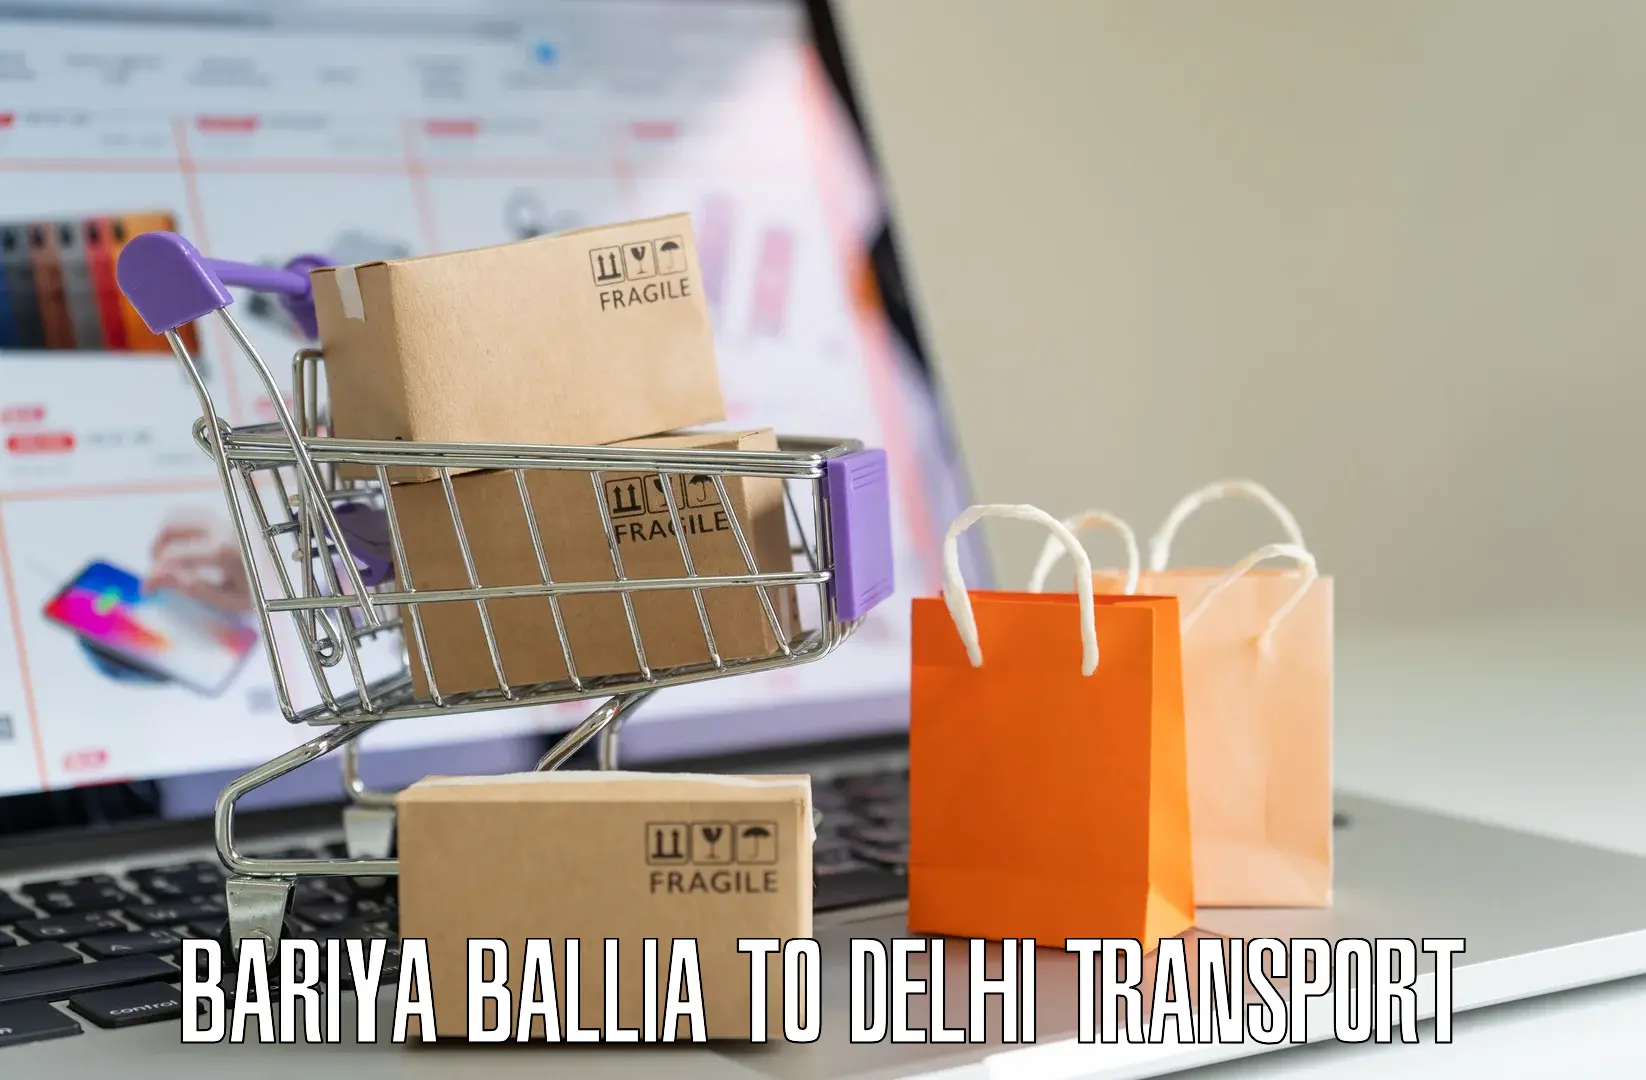 Transport shared services in Bariya Ballia to Subhash Nagar